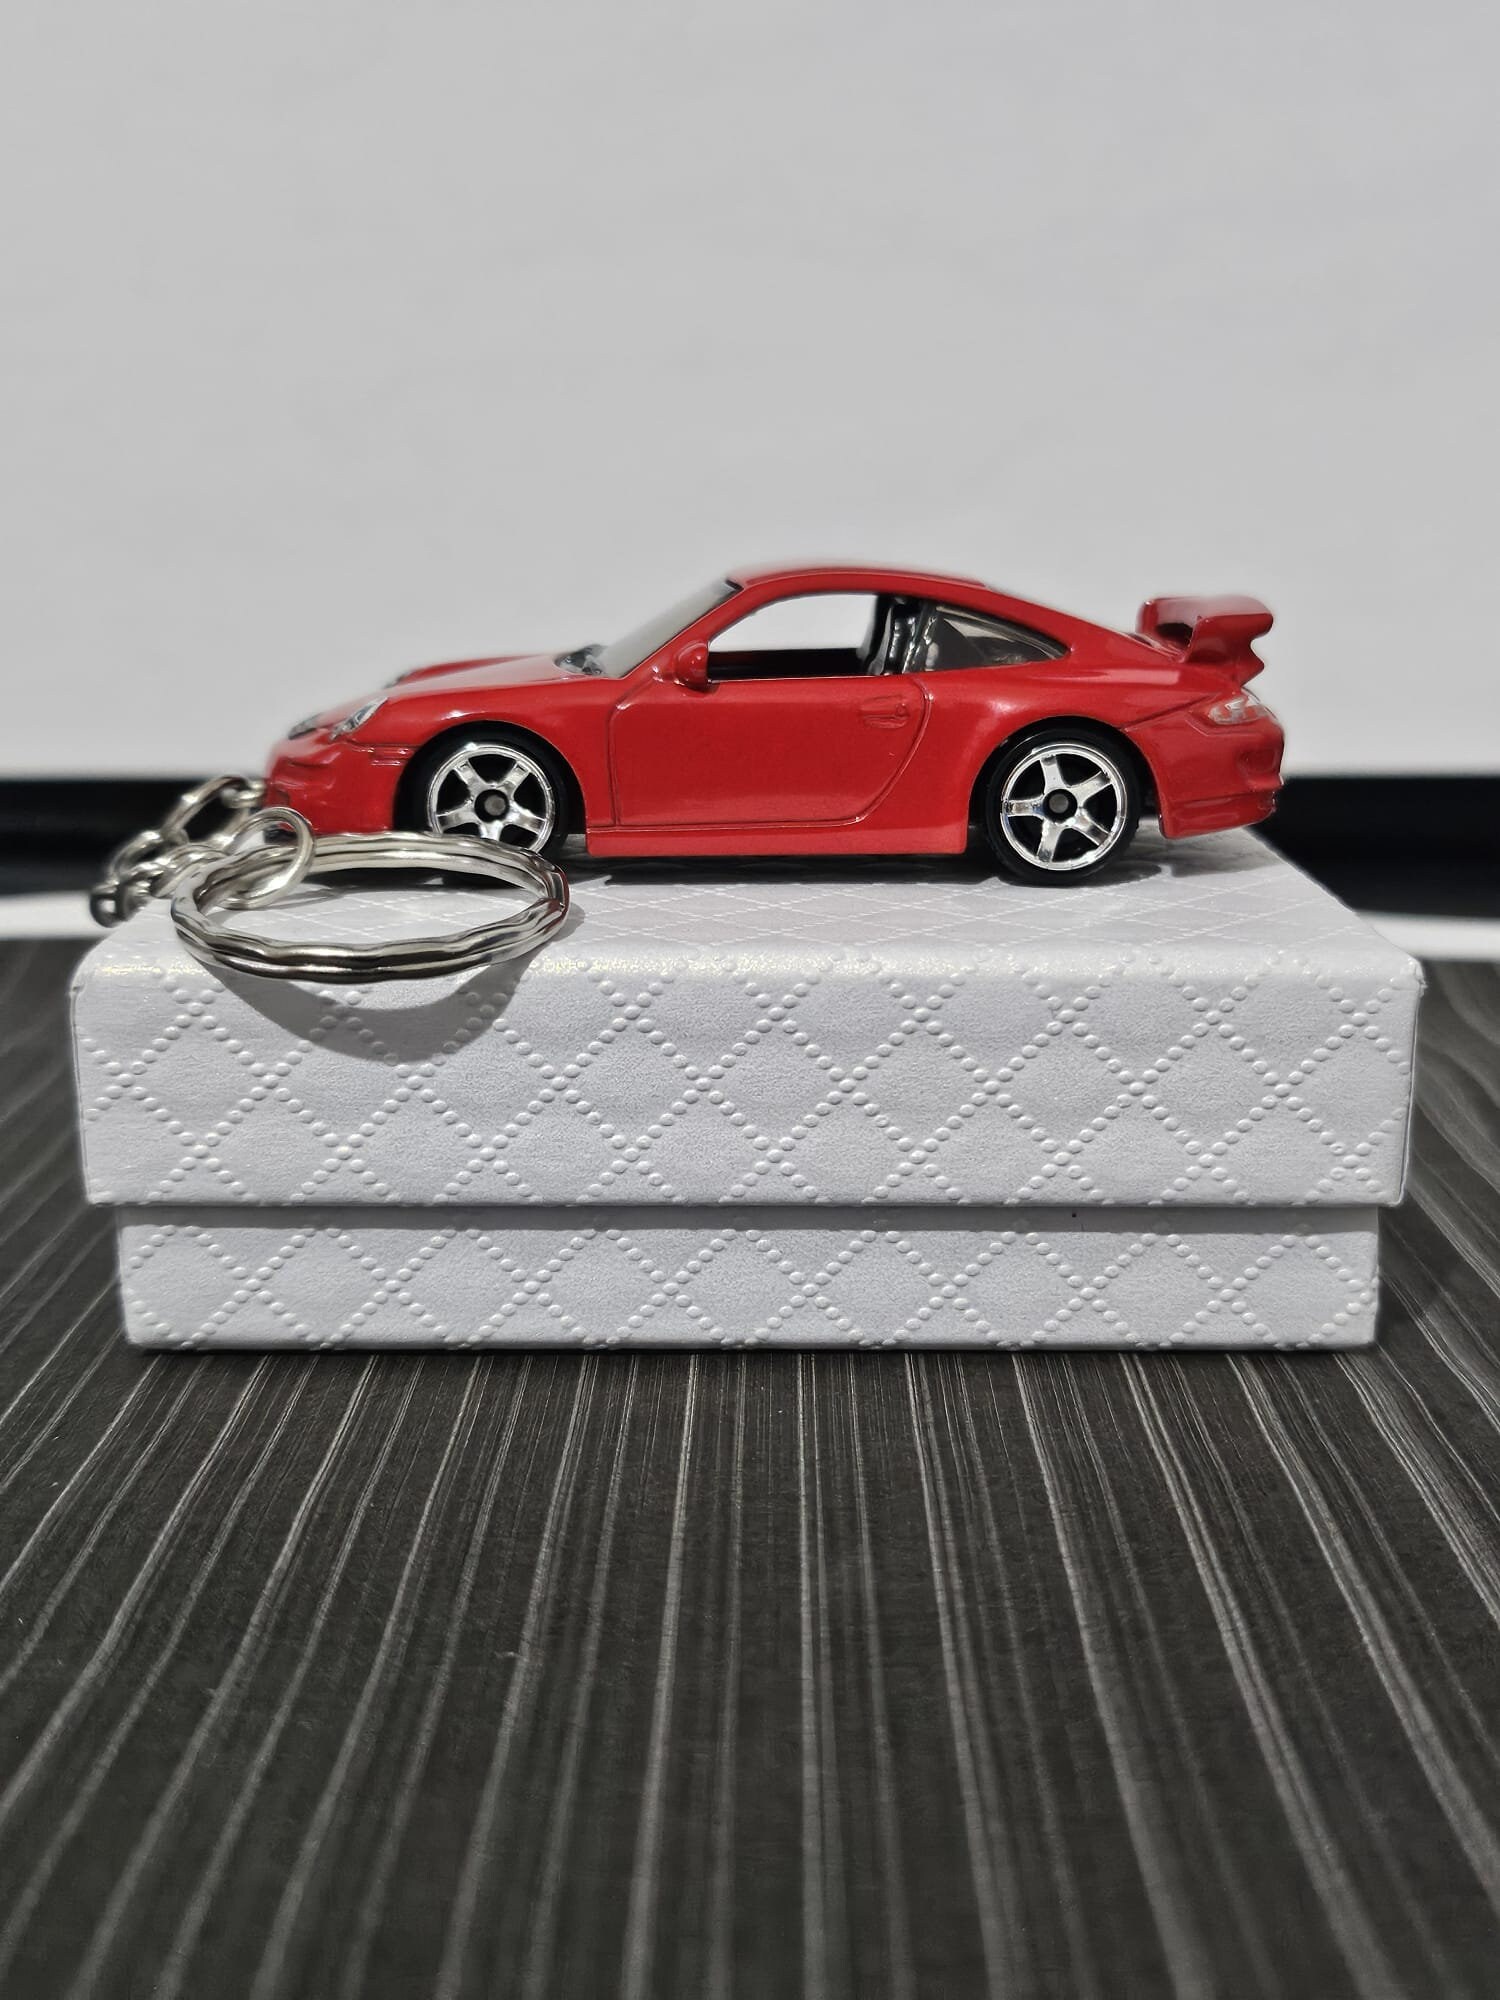 Schlüsselanhänger – Porsche 911 S blutorange - 20.9-2